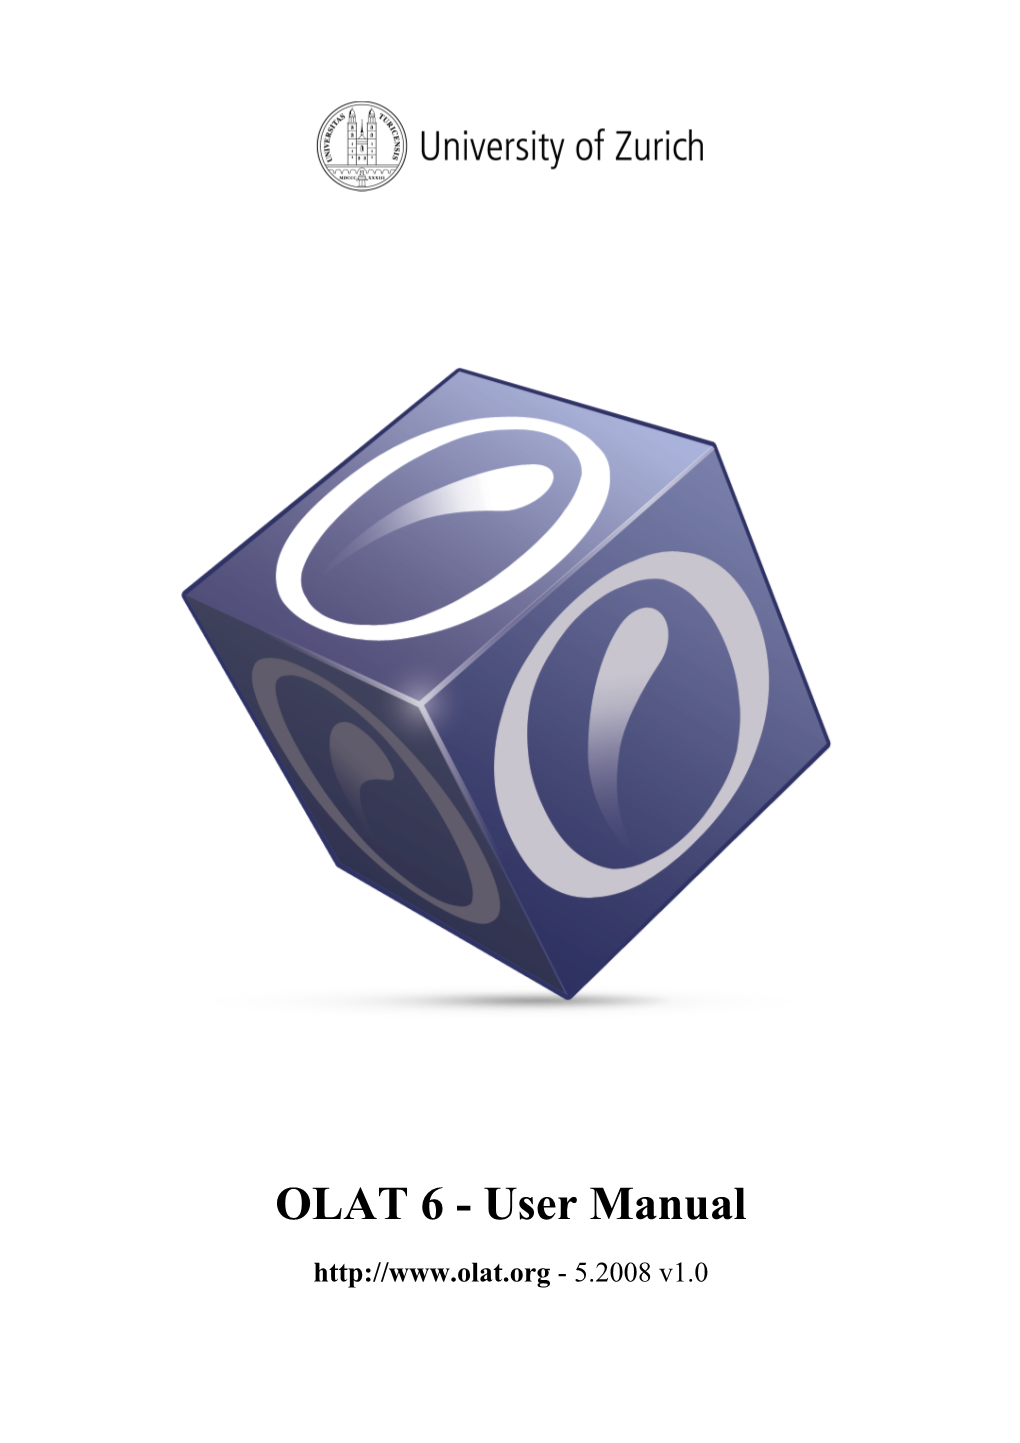 OLAT 6 User Manual V1.0